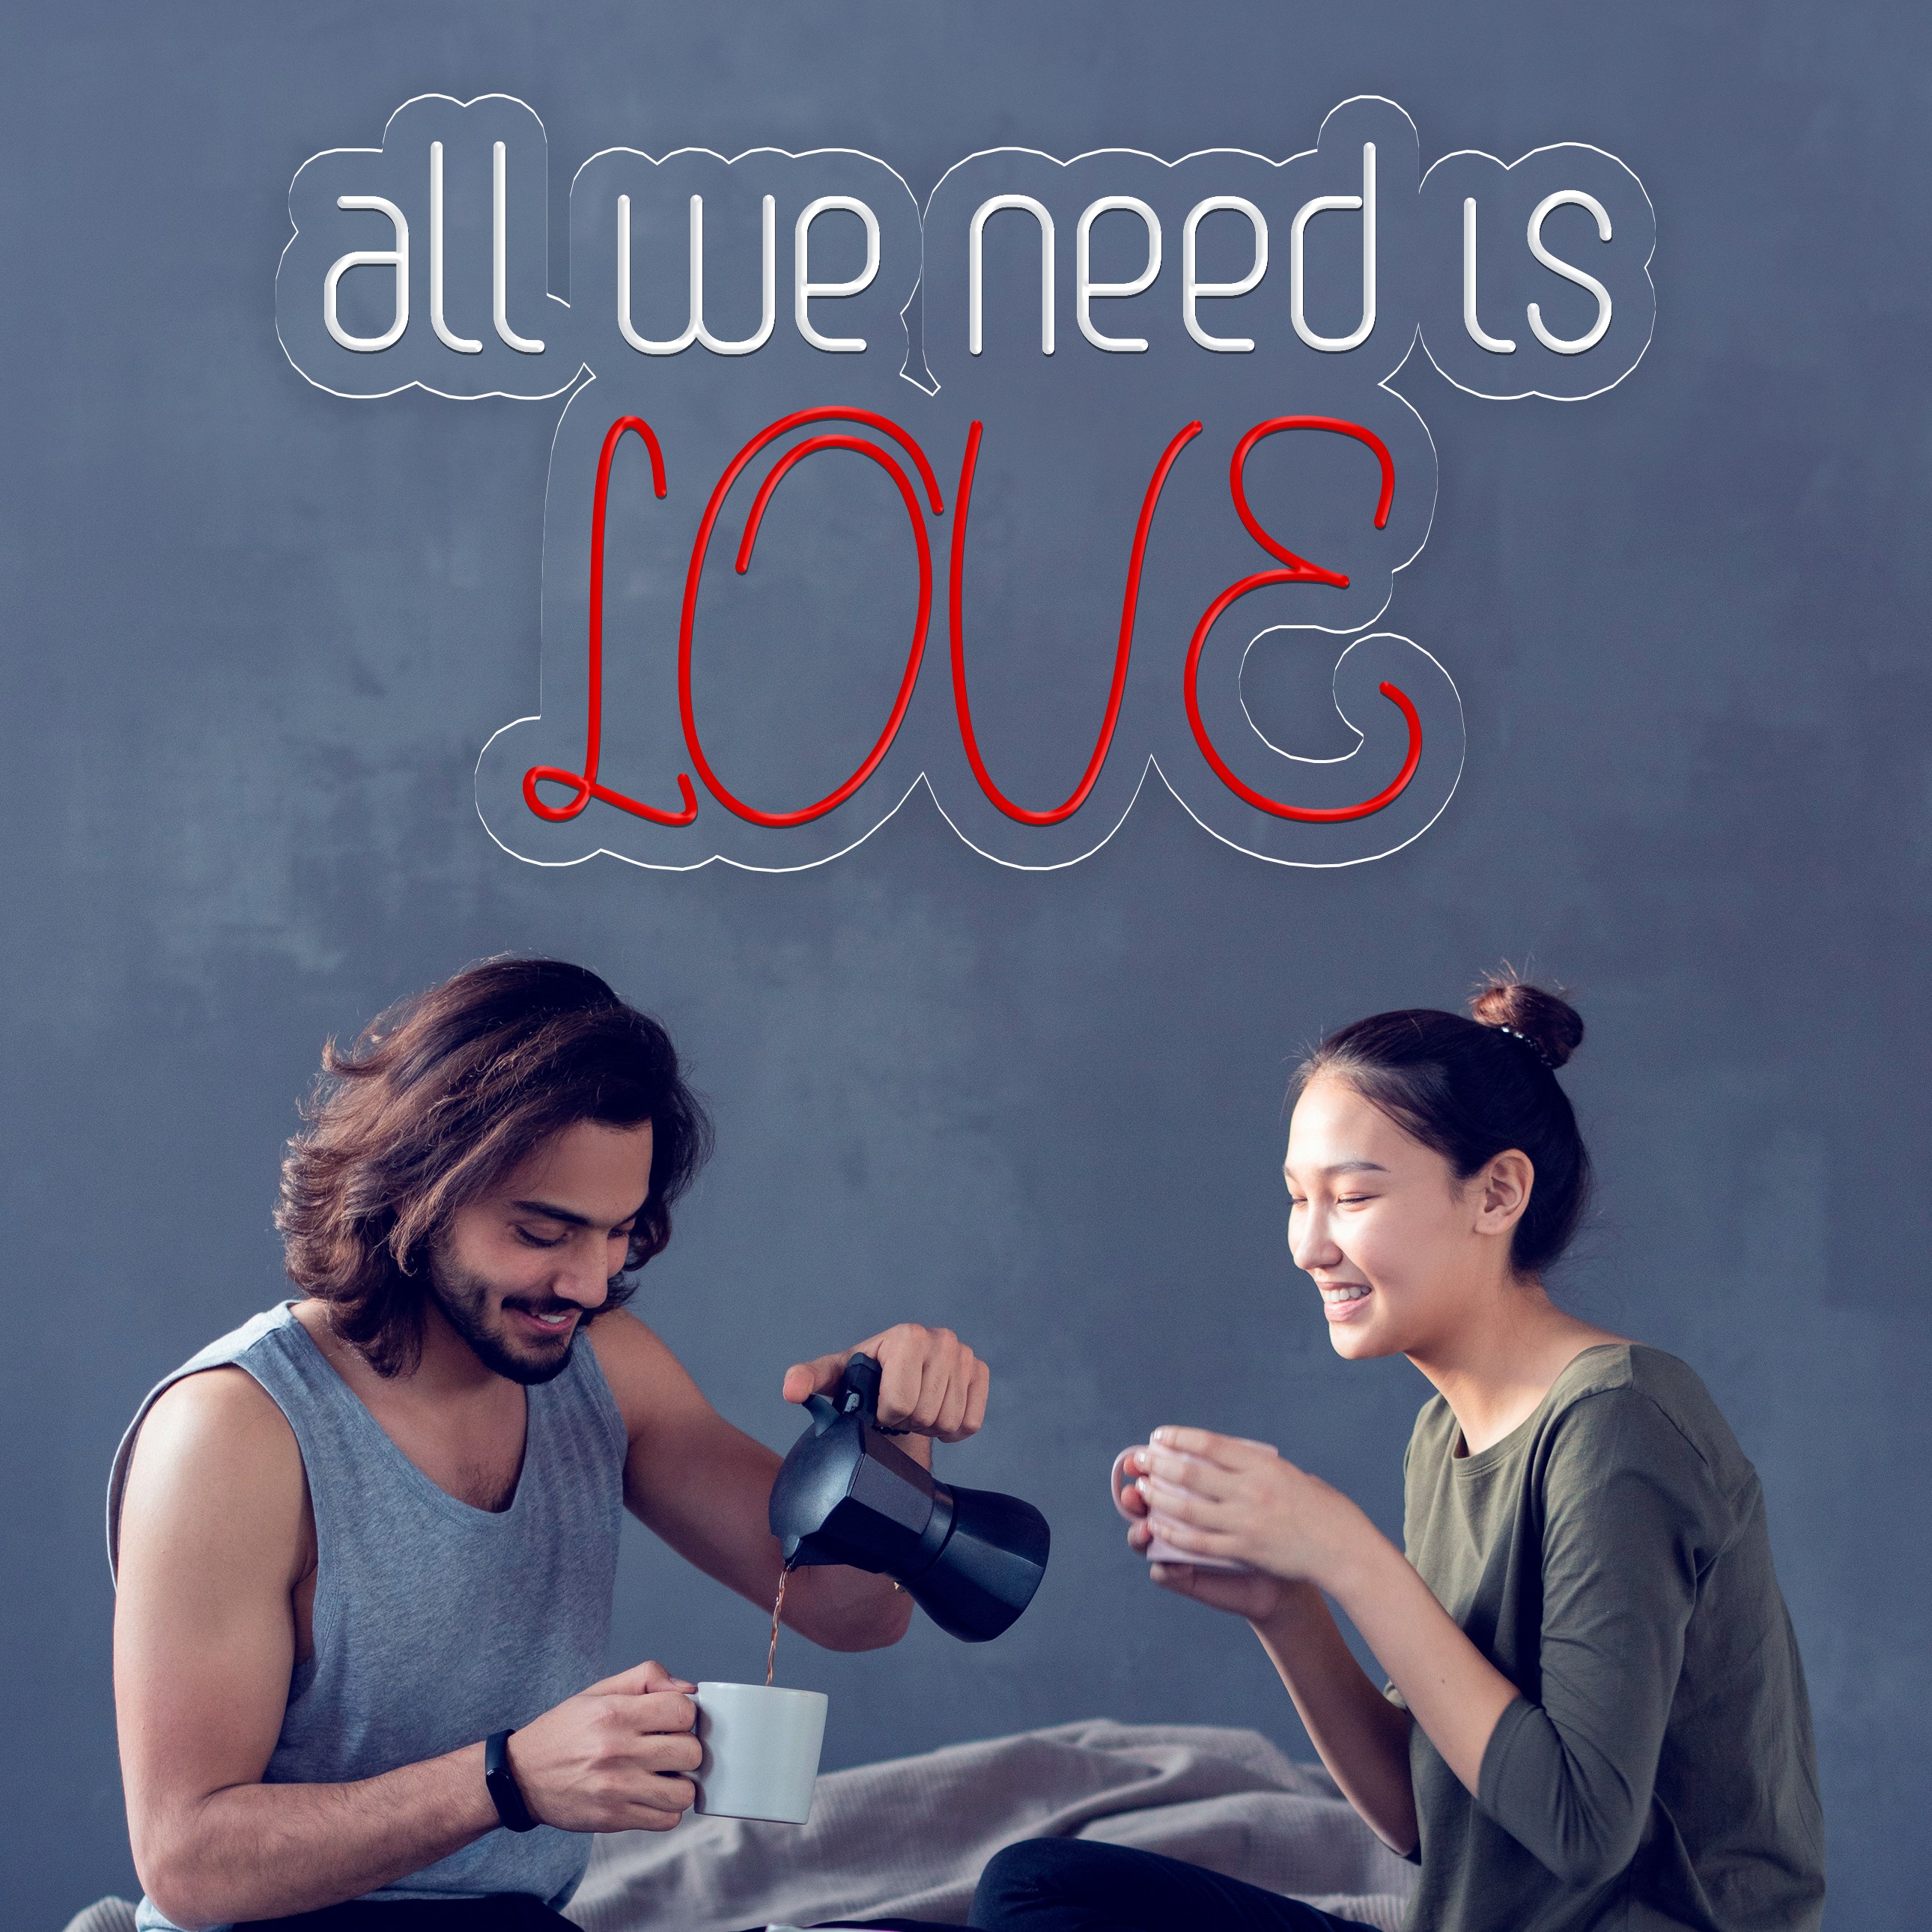 Imagem de Neón frase "all we need is love"